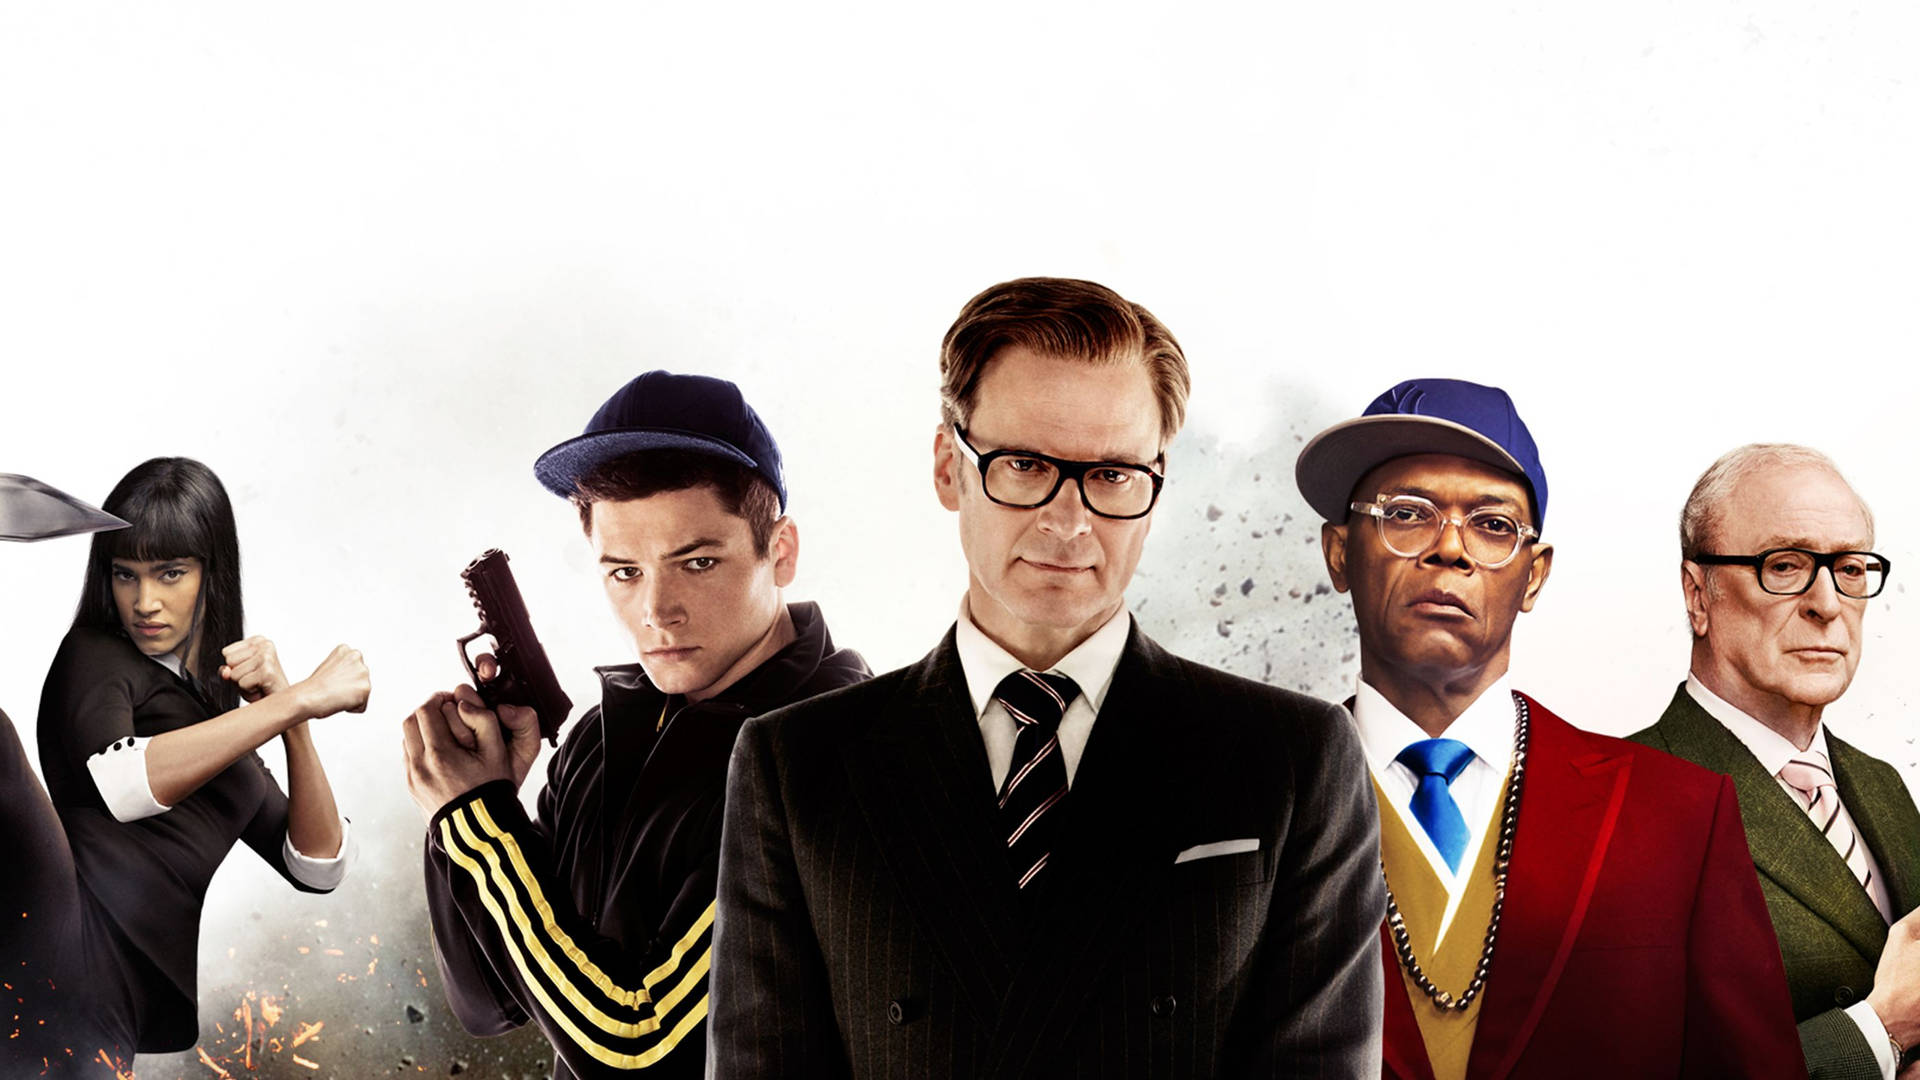 Kingsmanthe Secret Service Charaktere, Filmplakat Wallpaper